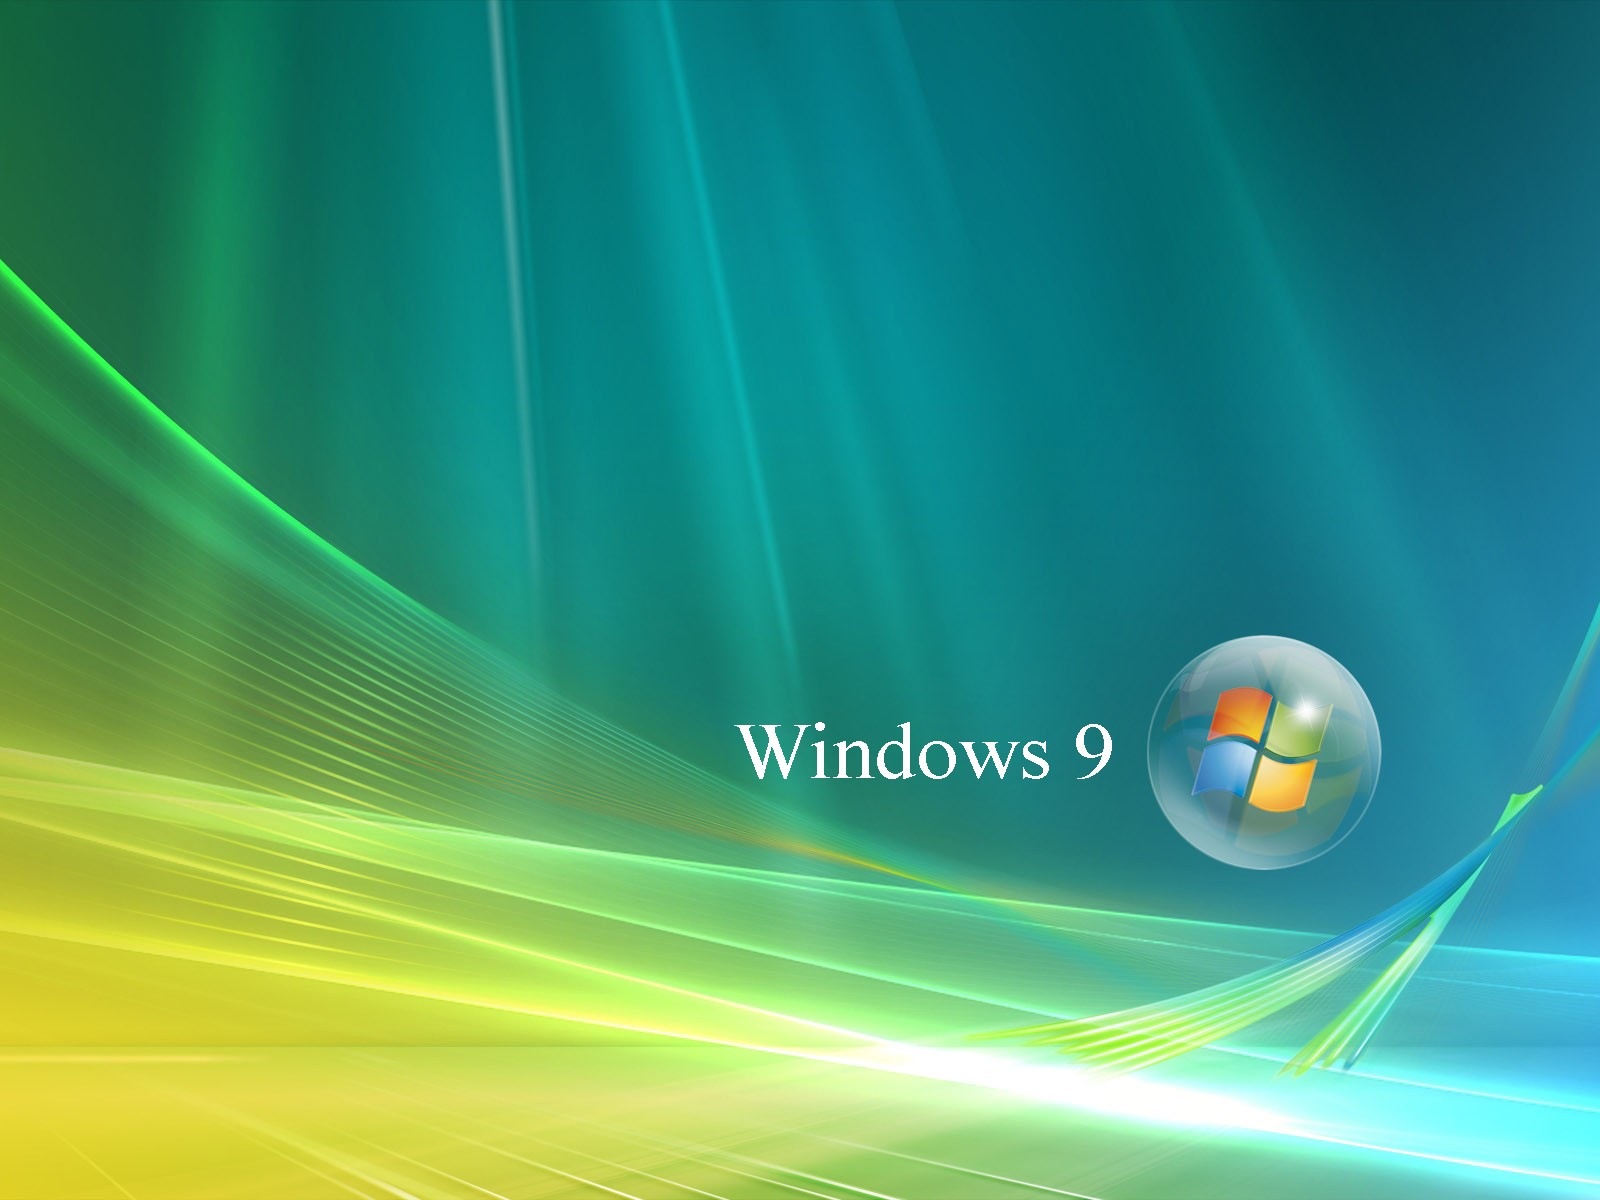 微软 Windows 9 系统主题 高清壁纸20 - 1600x1200